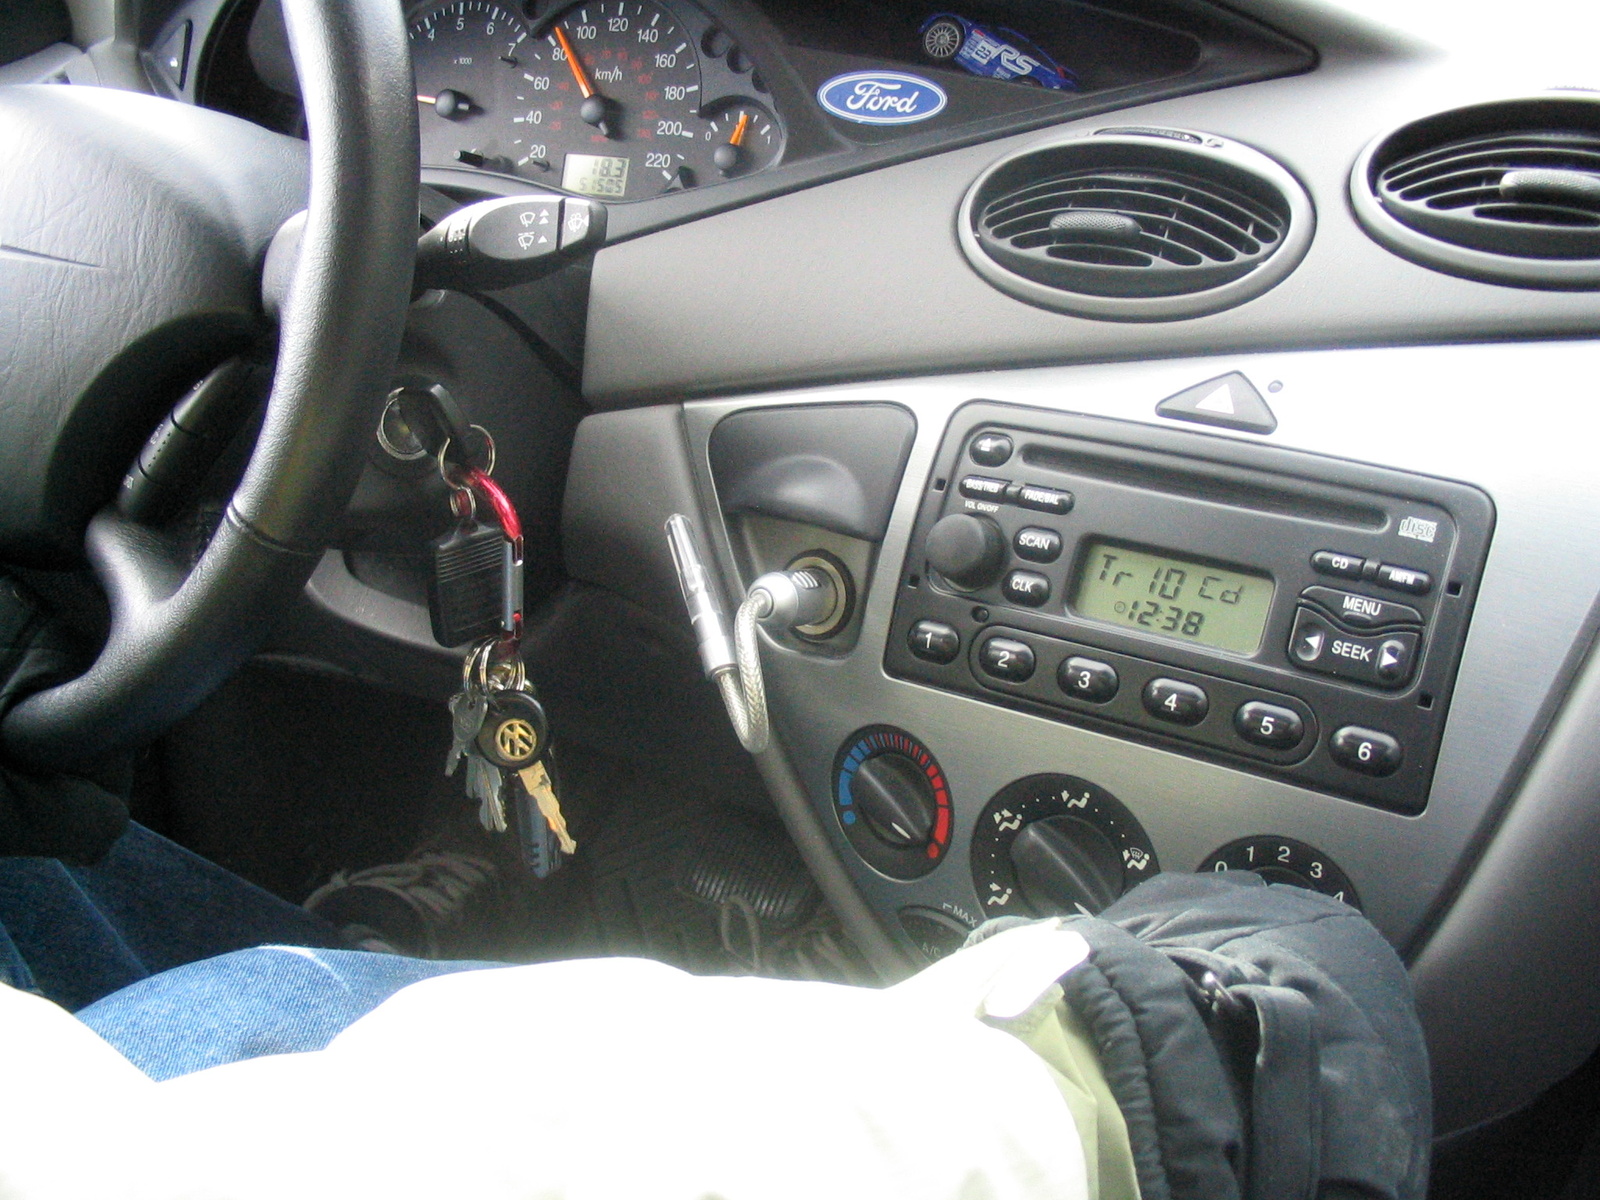 2002 Ford escape transmission shudder #6